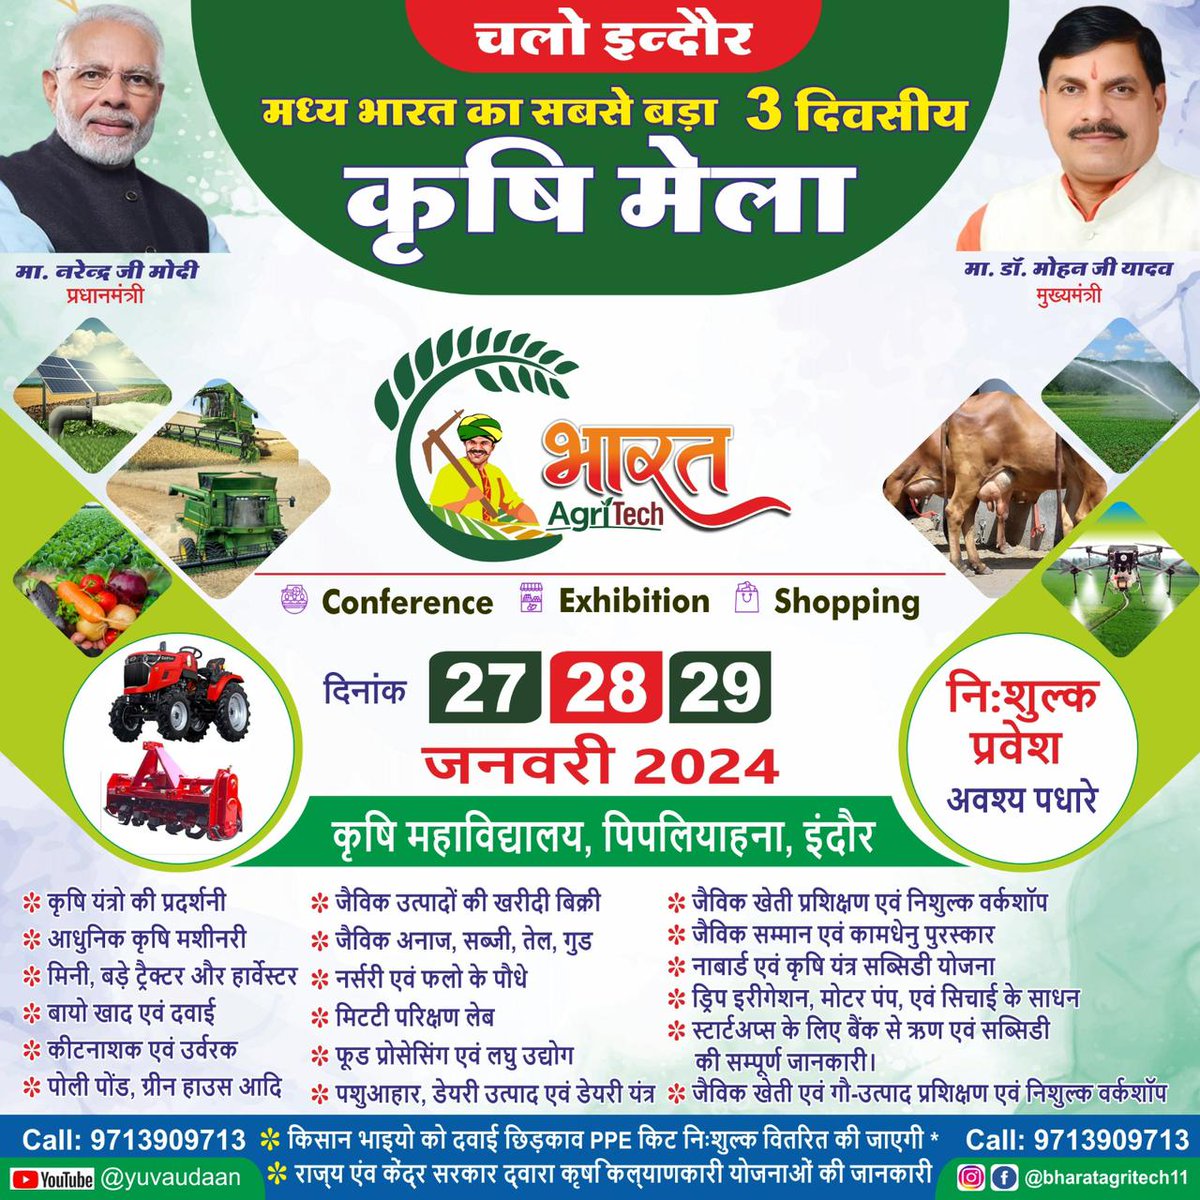 सभी किसान 🧑‍🌾और कृषि प्रेमी 🌾ध्यान दें!

आपके शहर इंदौर में मध्य भारत का सबसे बड़ा 3-दिवसीय कृषि मेला आयोजित किया जा रहा है, जो 27 जनवरी से 29 जनवरी तक चलेगा।

#KrishiJagran #Krishimela #KisanMela #KisanMela2023 #KisanMela2024 #Indore #MadhyaPradesh #agriculturefair